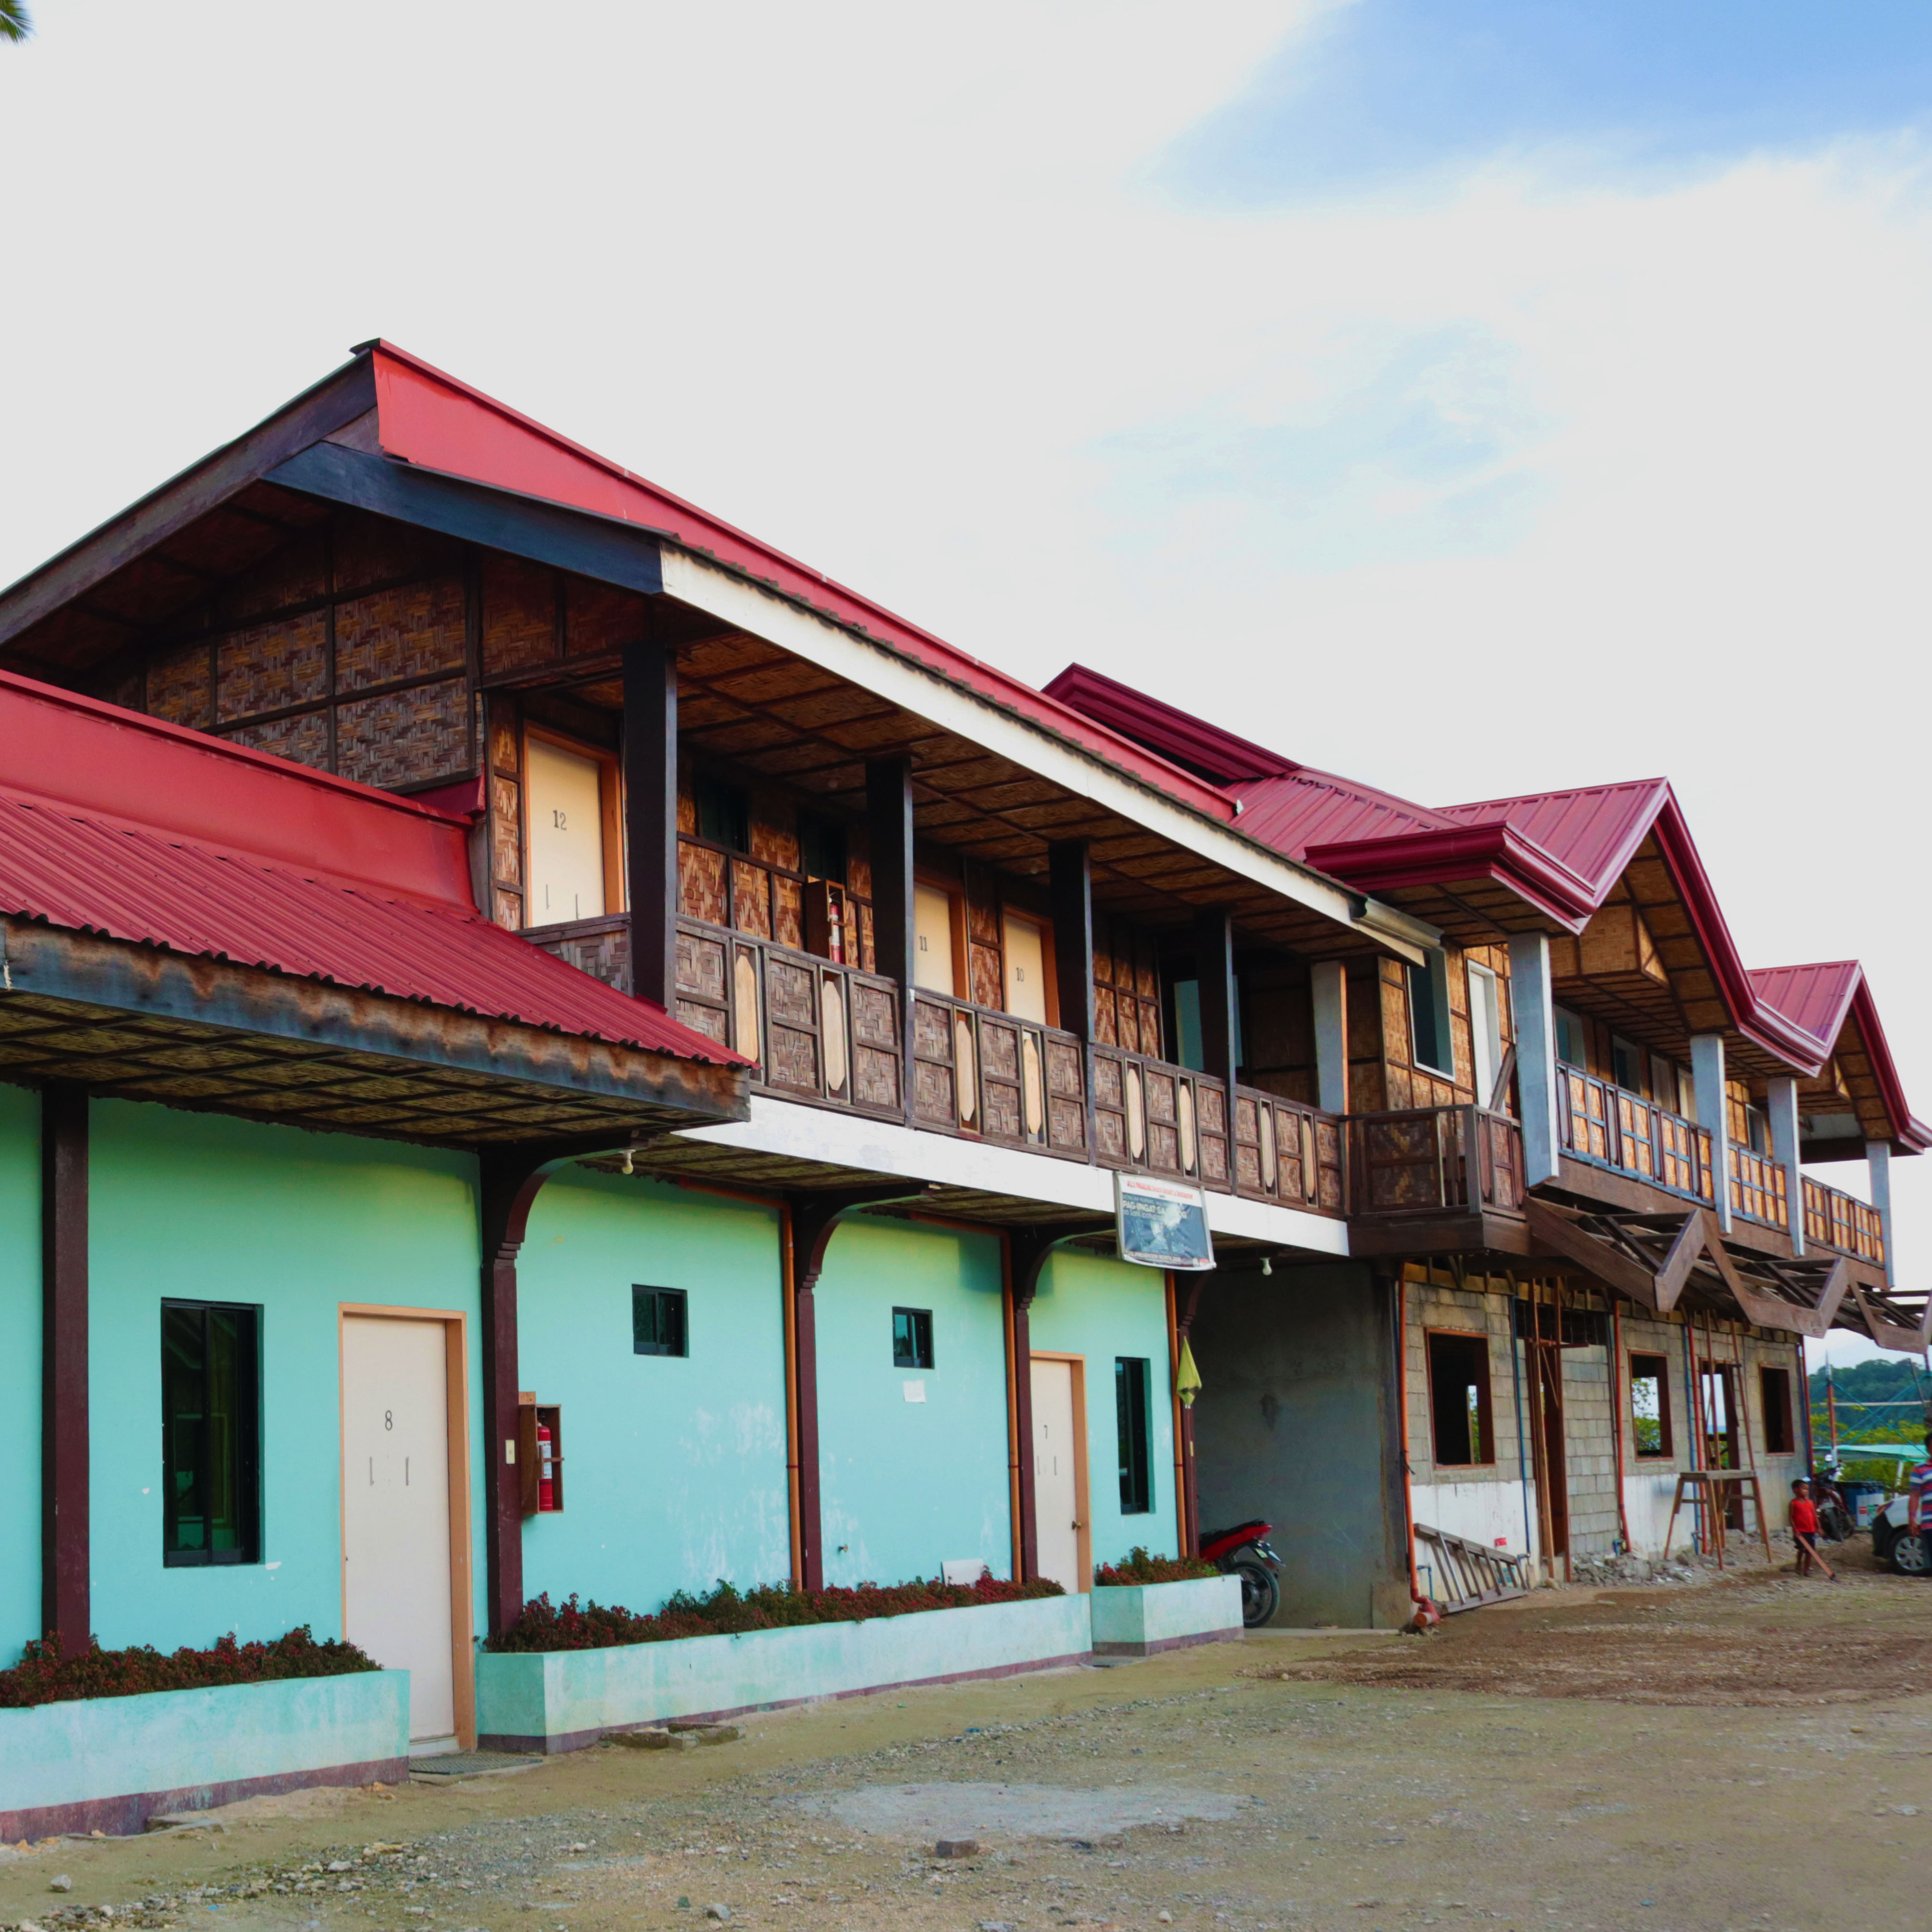 <b class="font-bara"><i class="bi bi-geo-fill h4"></i> VILLA ROSALINA RESORT</b> <br/>Located at Brgy. Britania, San Agustin, Surigao del Sur.
Contact No: 09088833216